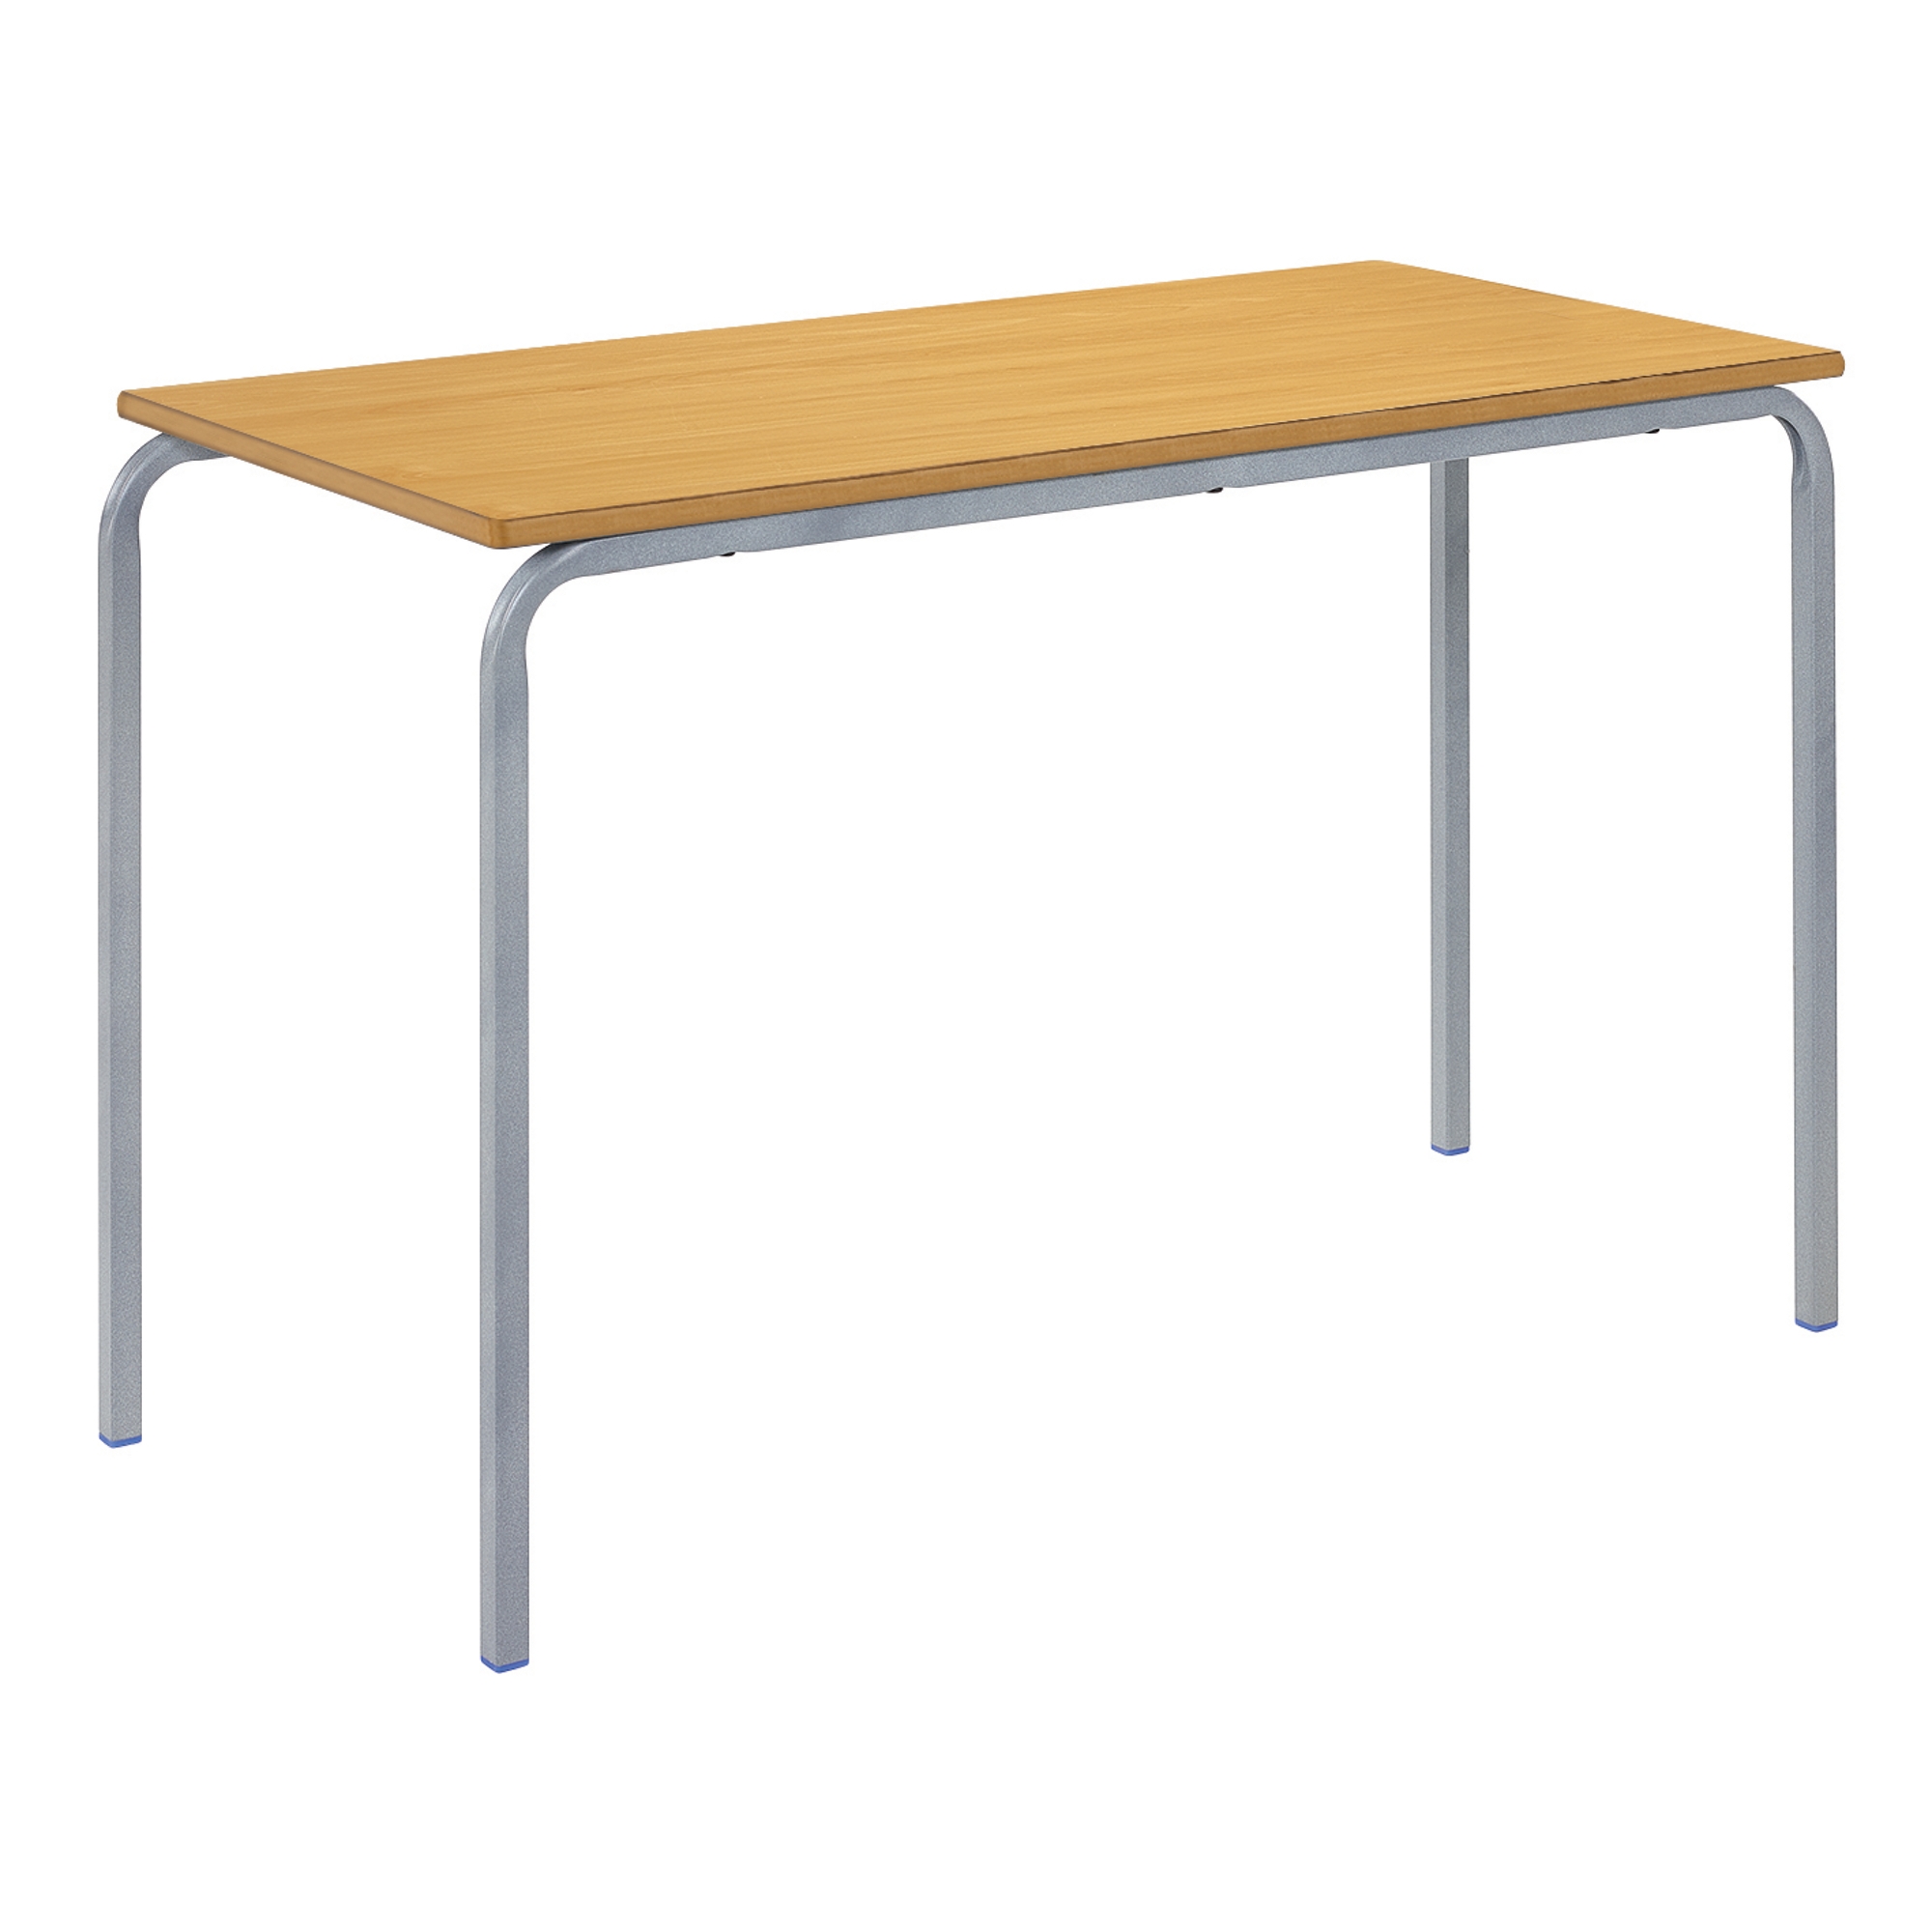 Classmates Rectangular Crushed Bent Classroom Table - 1100 x 550 x 530mm - Beech